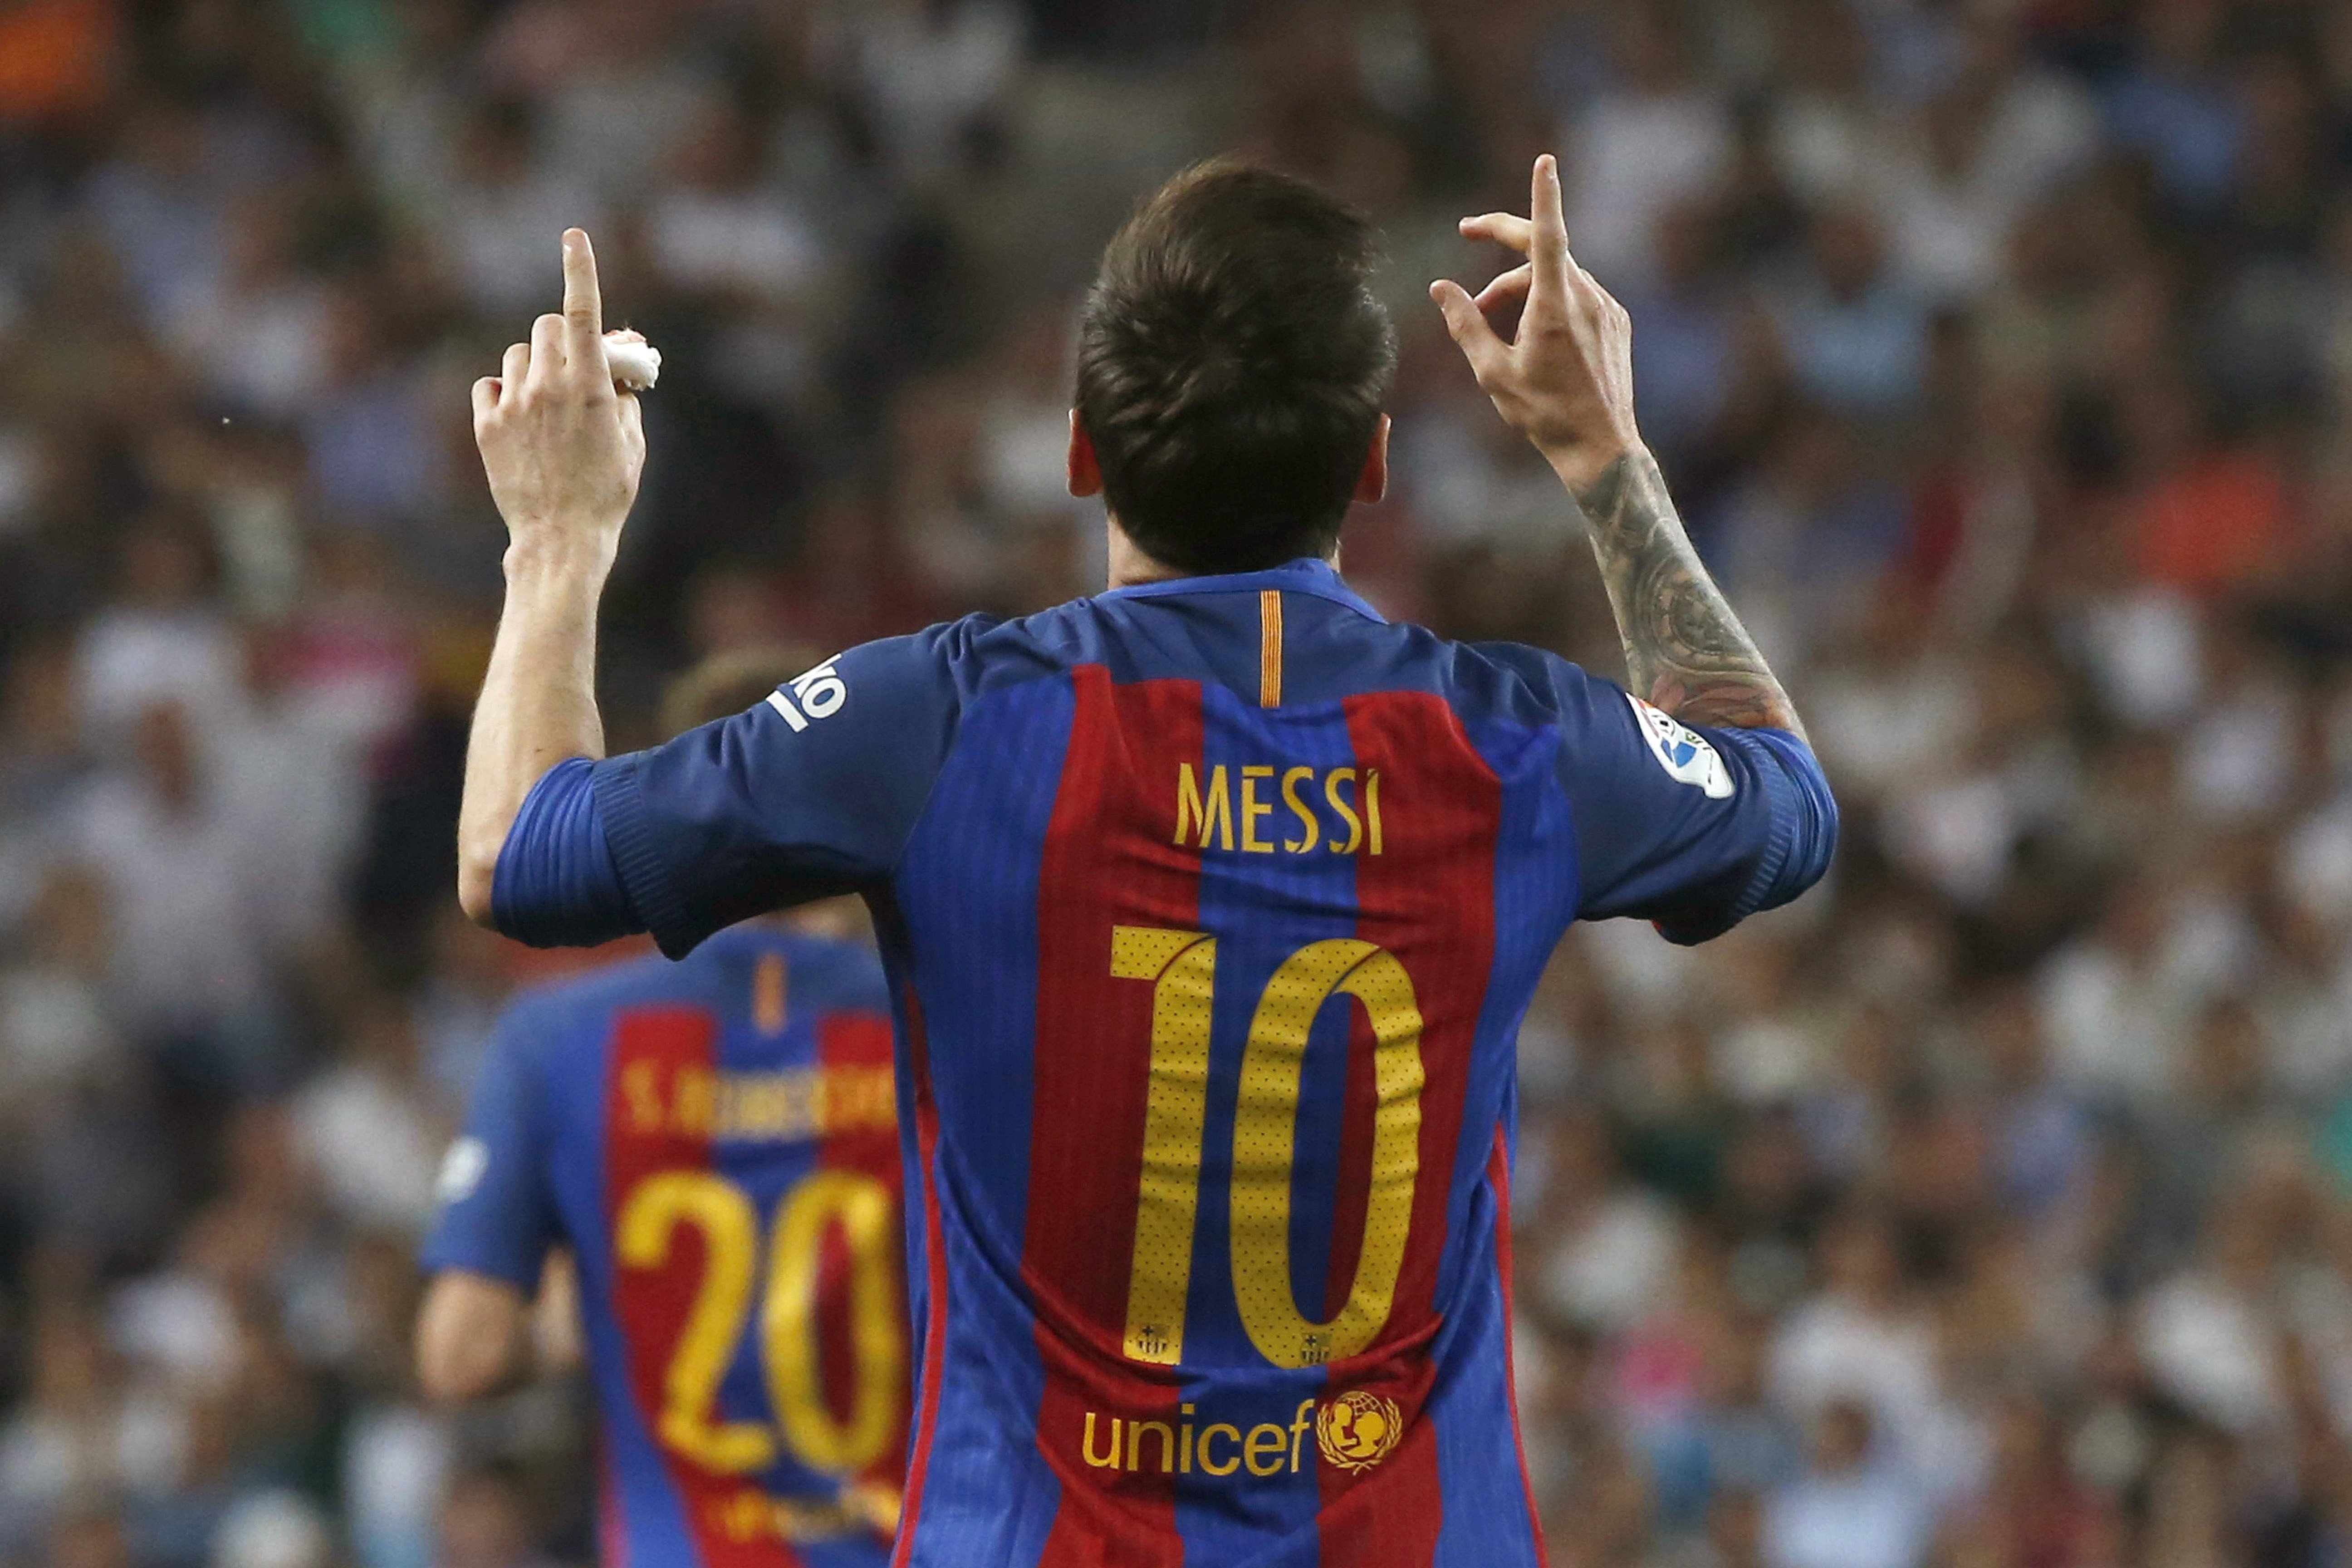 Messi no coneix Valverde però l'objectiu és el mateix: "Guanyar títols"